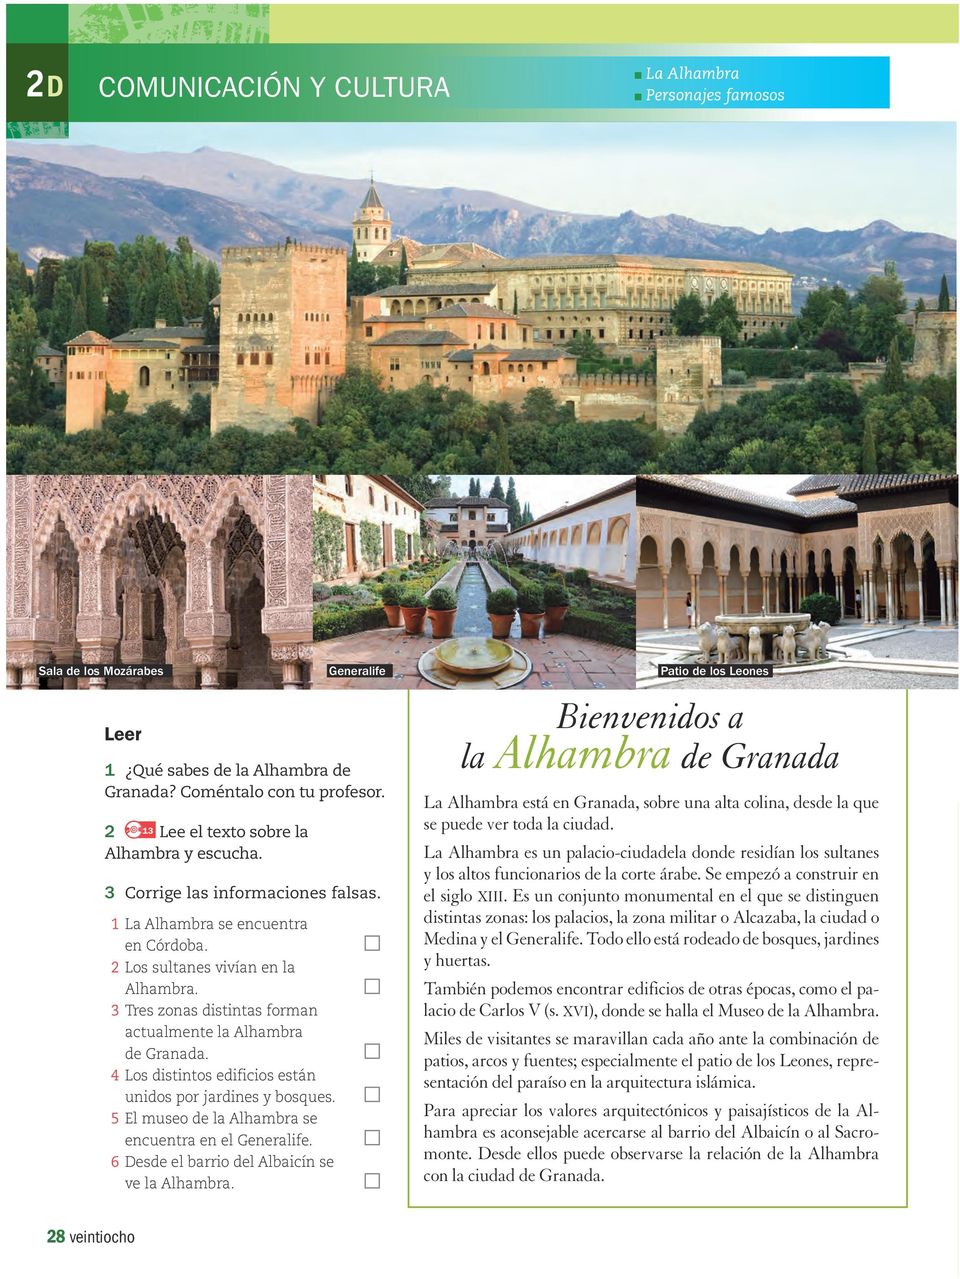 4 Los distintos edificios están unidos por jardines y bosques. 5 El museo de la Alhambra se encuentra en el Generalife. 6 Desde el barrio del Albaicín se ve la Alhambra.